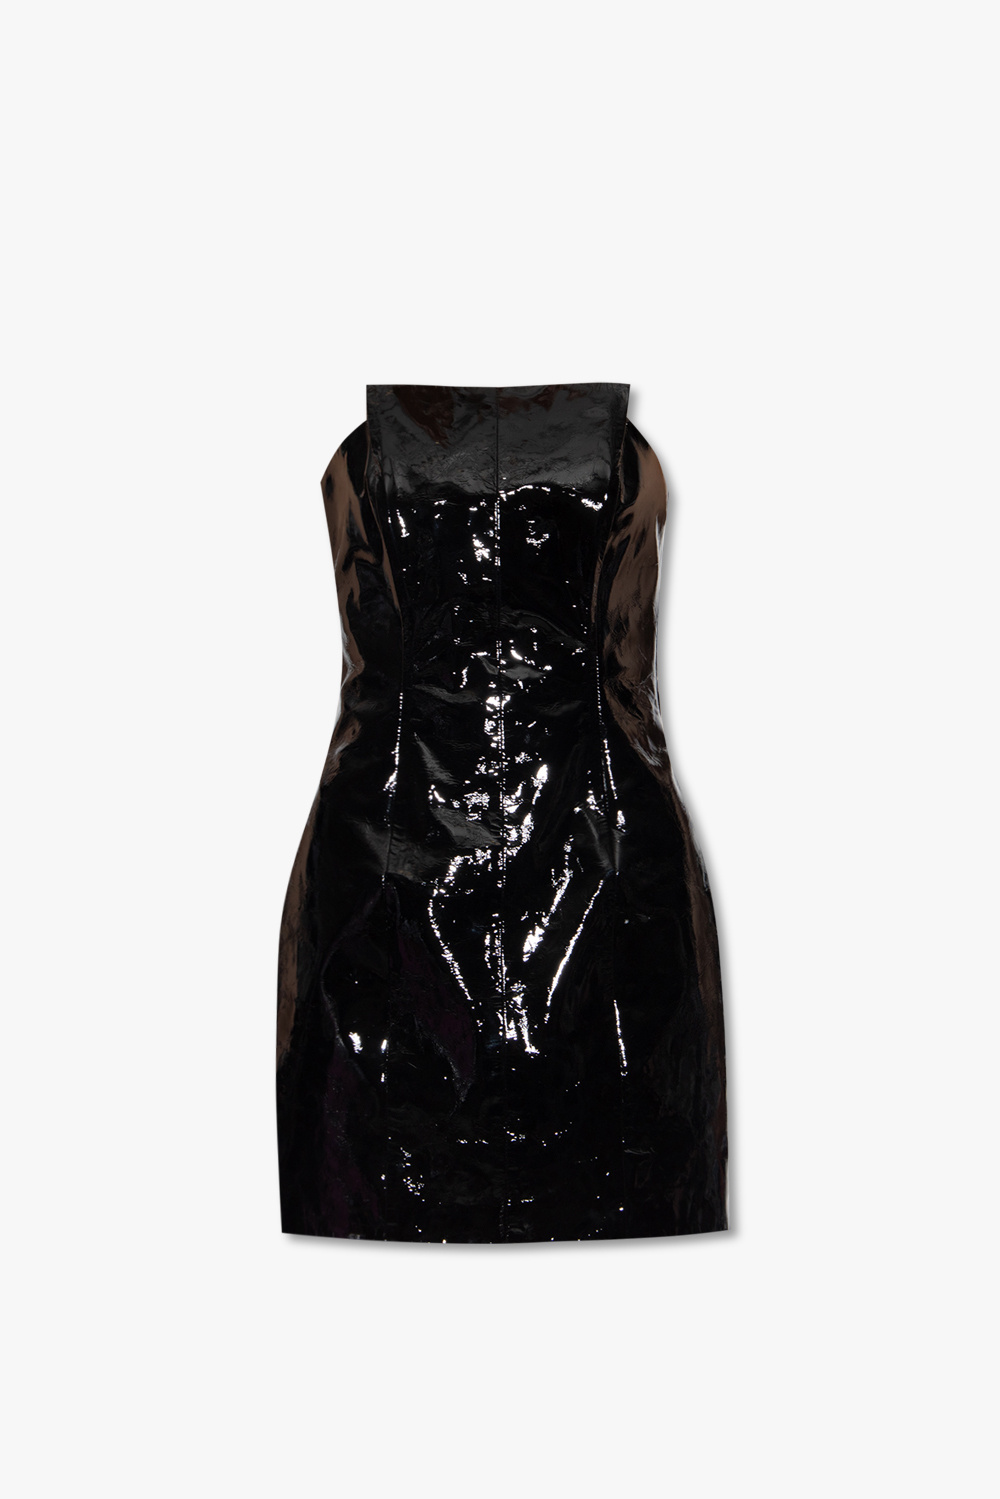 The Mannei ‘Vigo’ dress